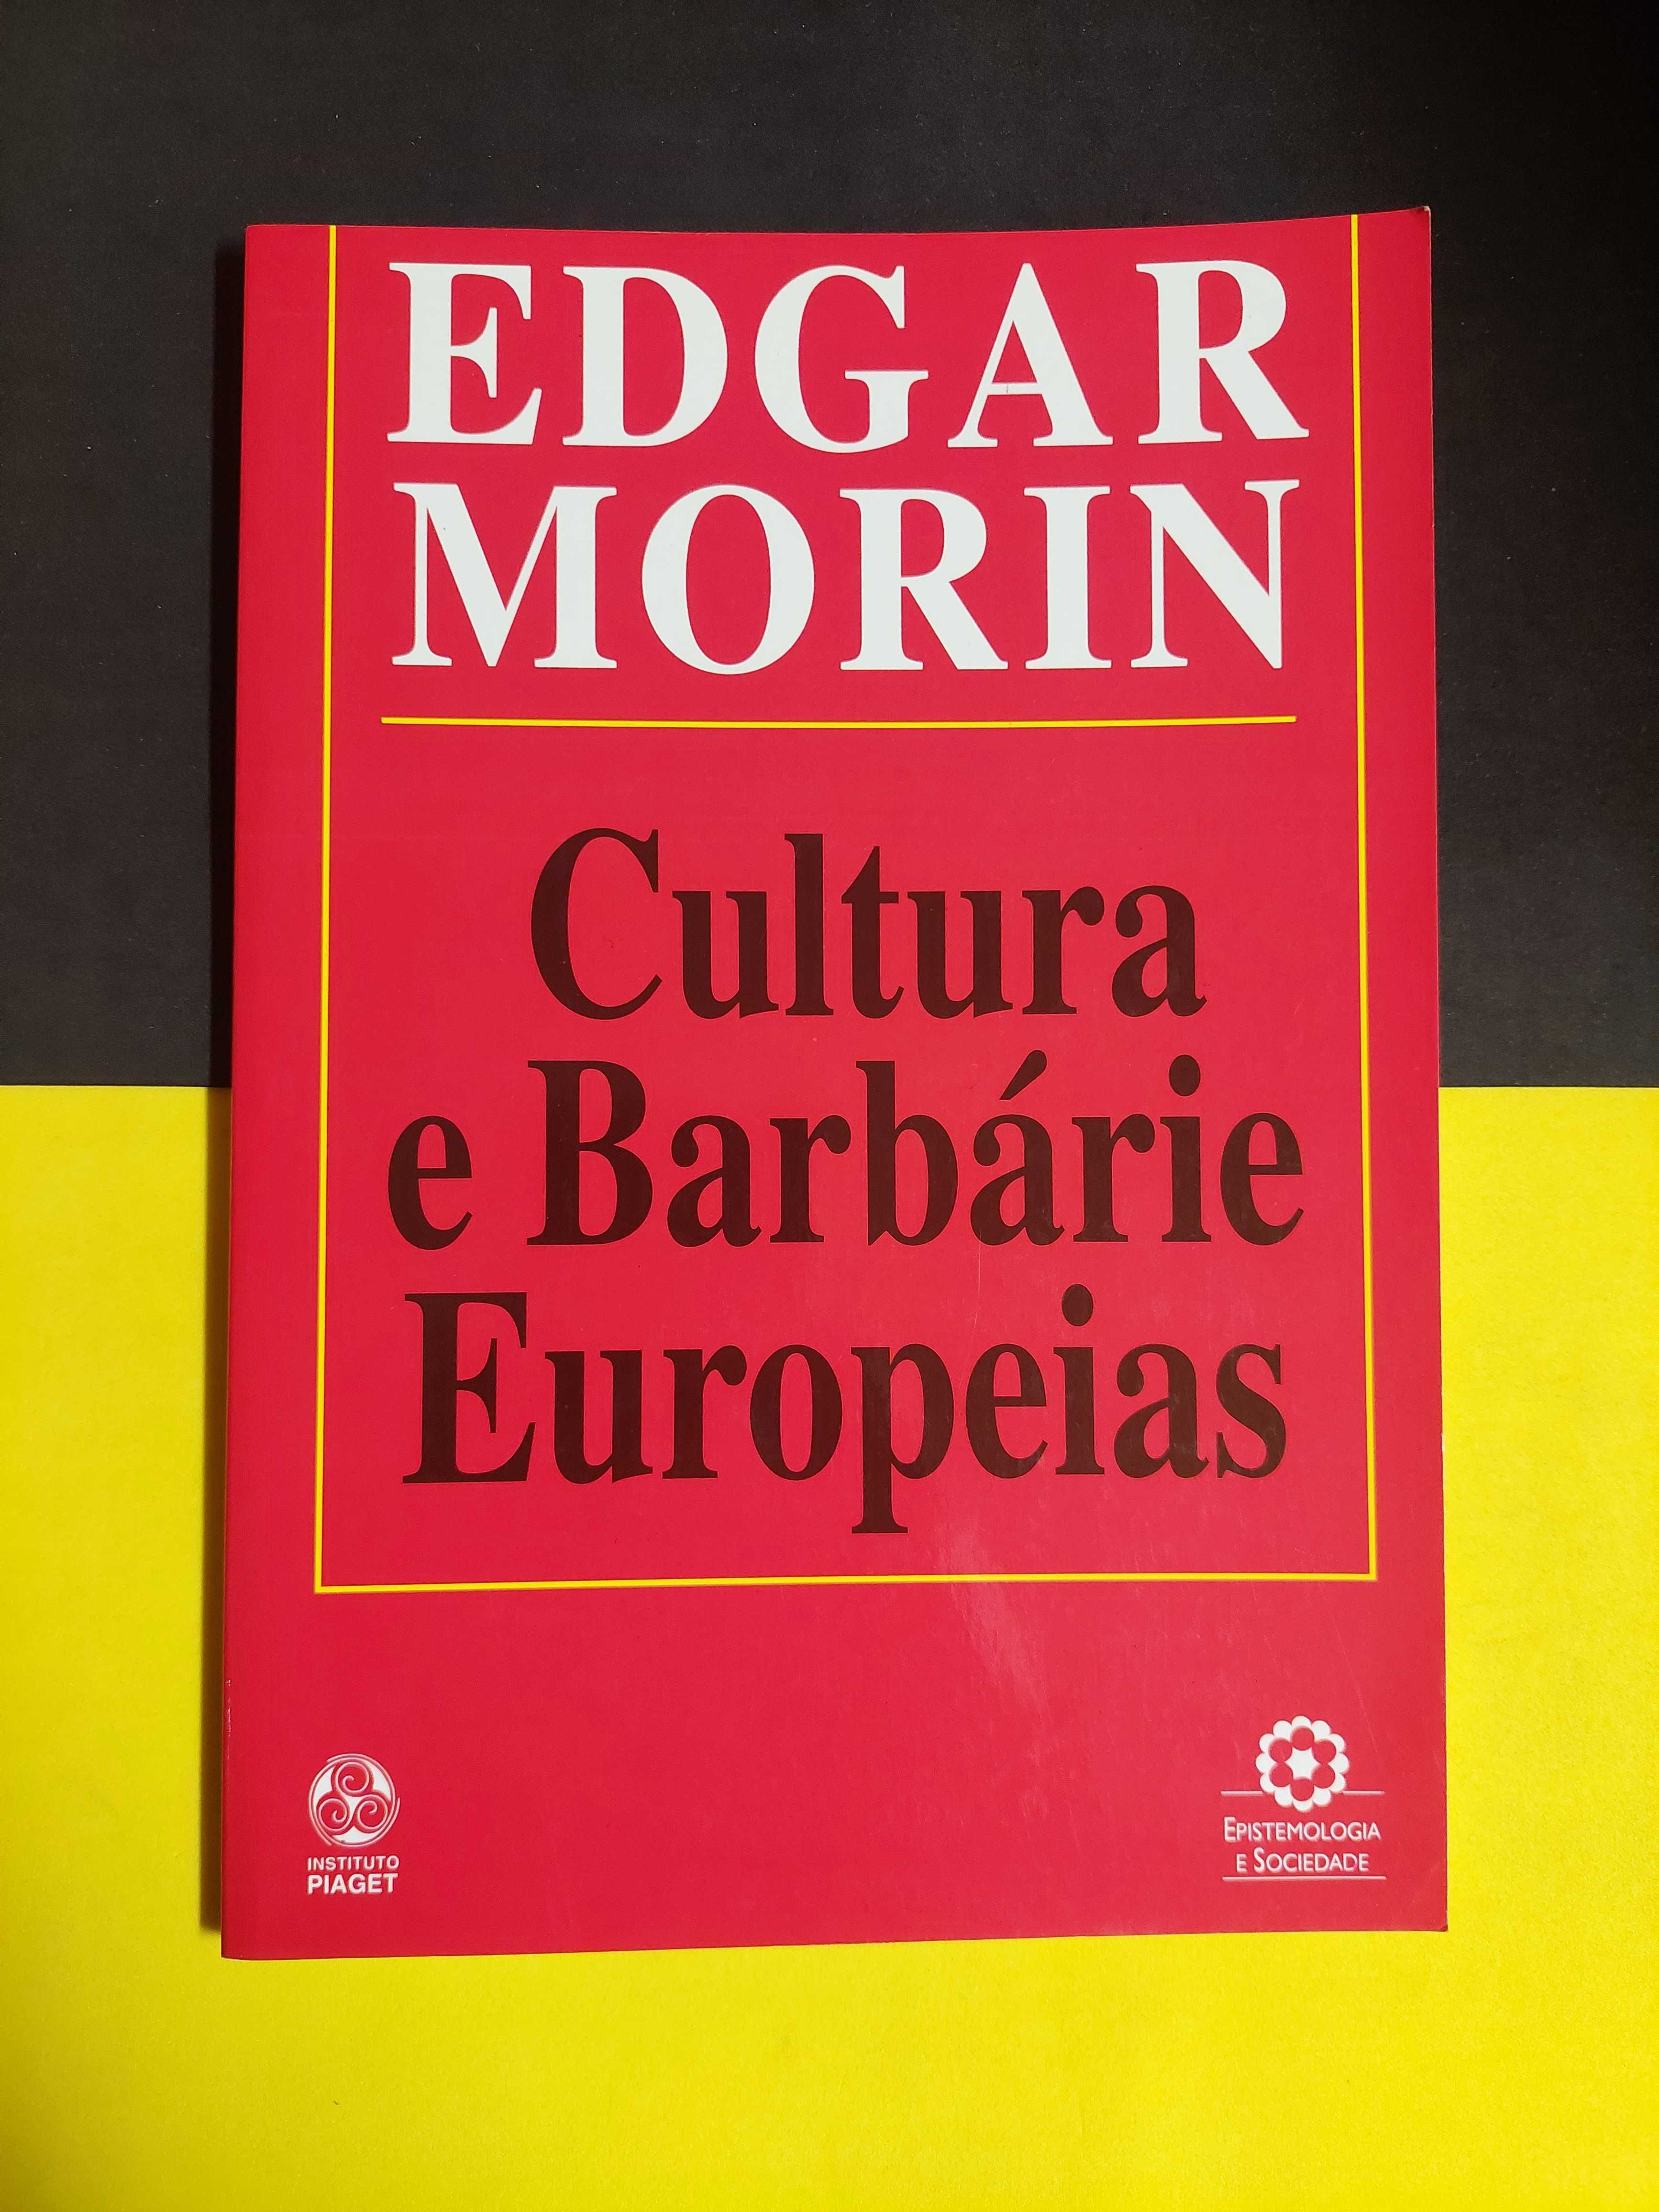 Edgar Morin - Cultura e barbárie europeias